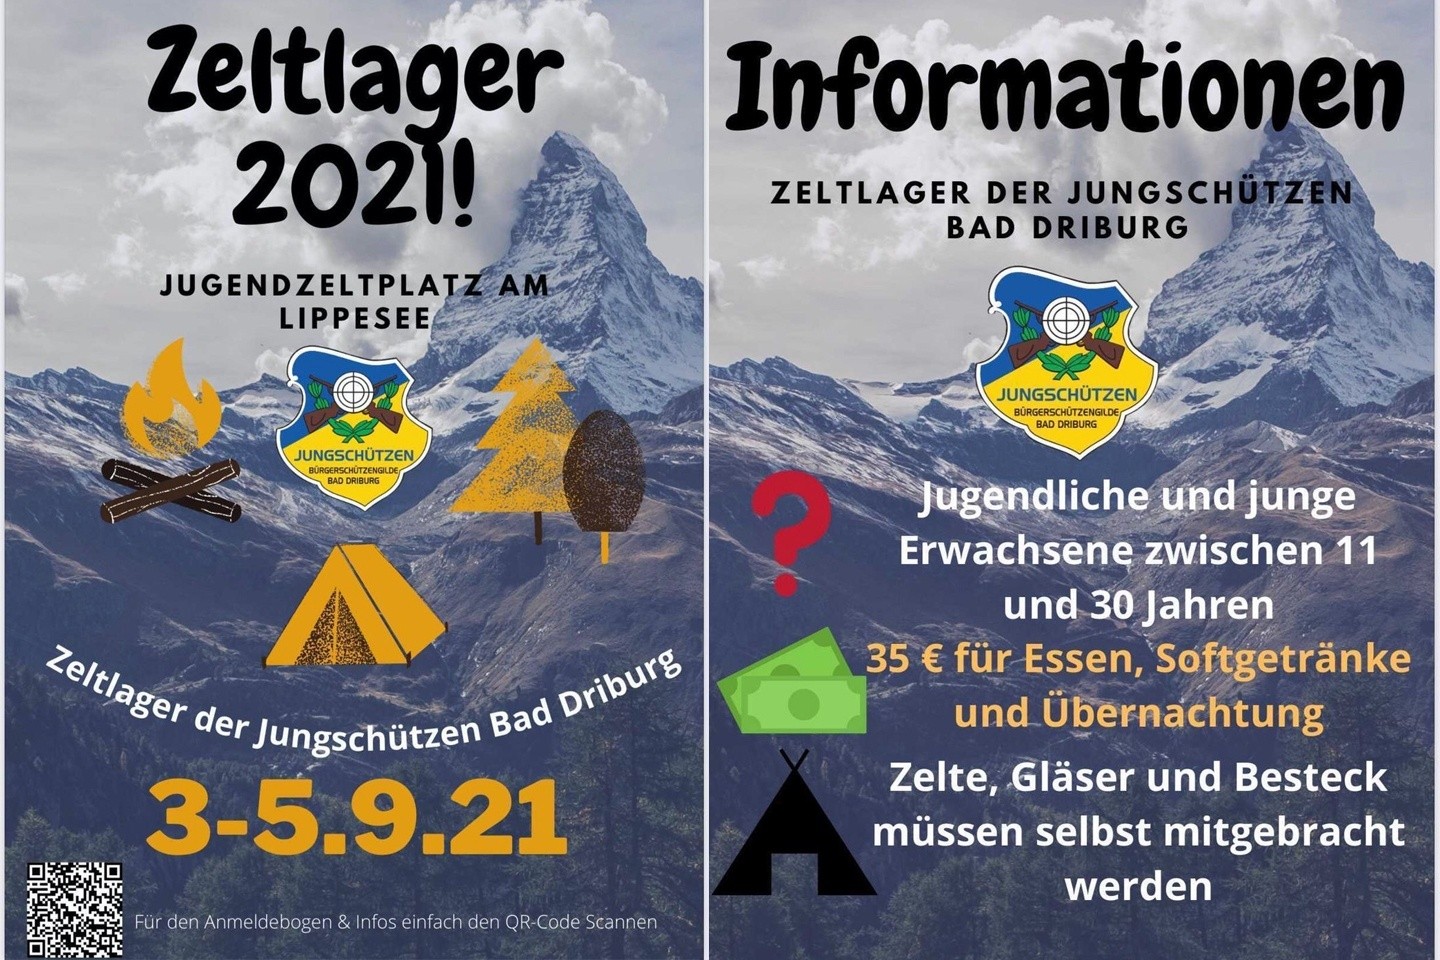 Zeltlager 2021 der Jungschützen Bad Driburg vom 03.-05.09.2021